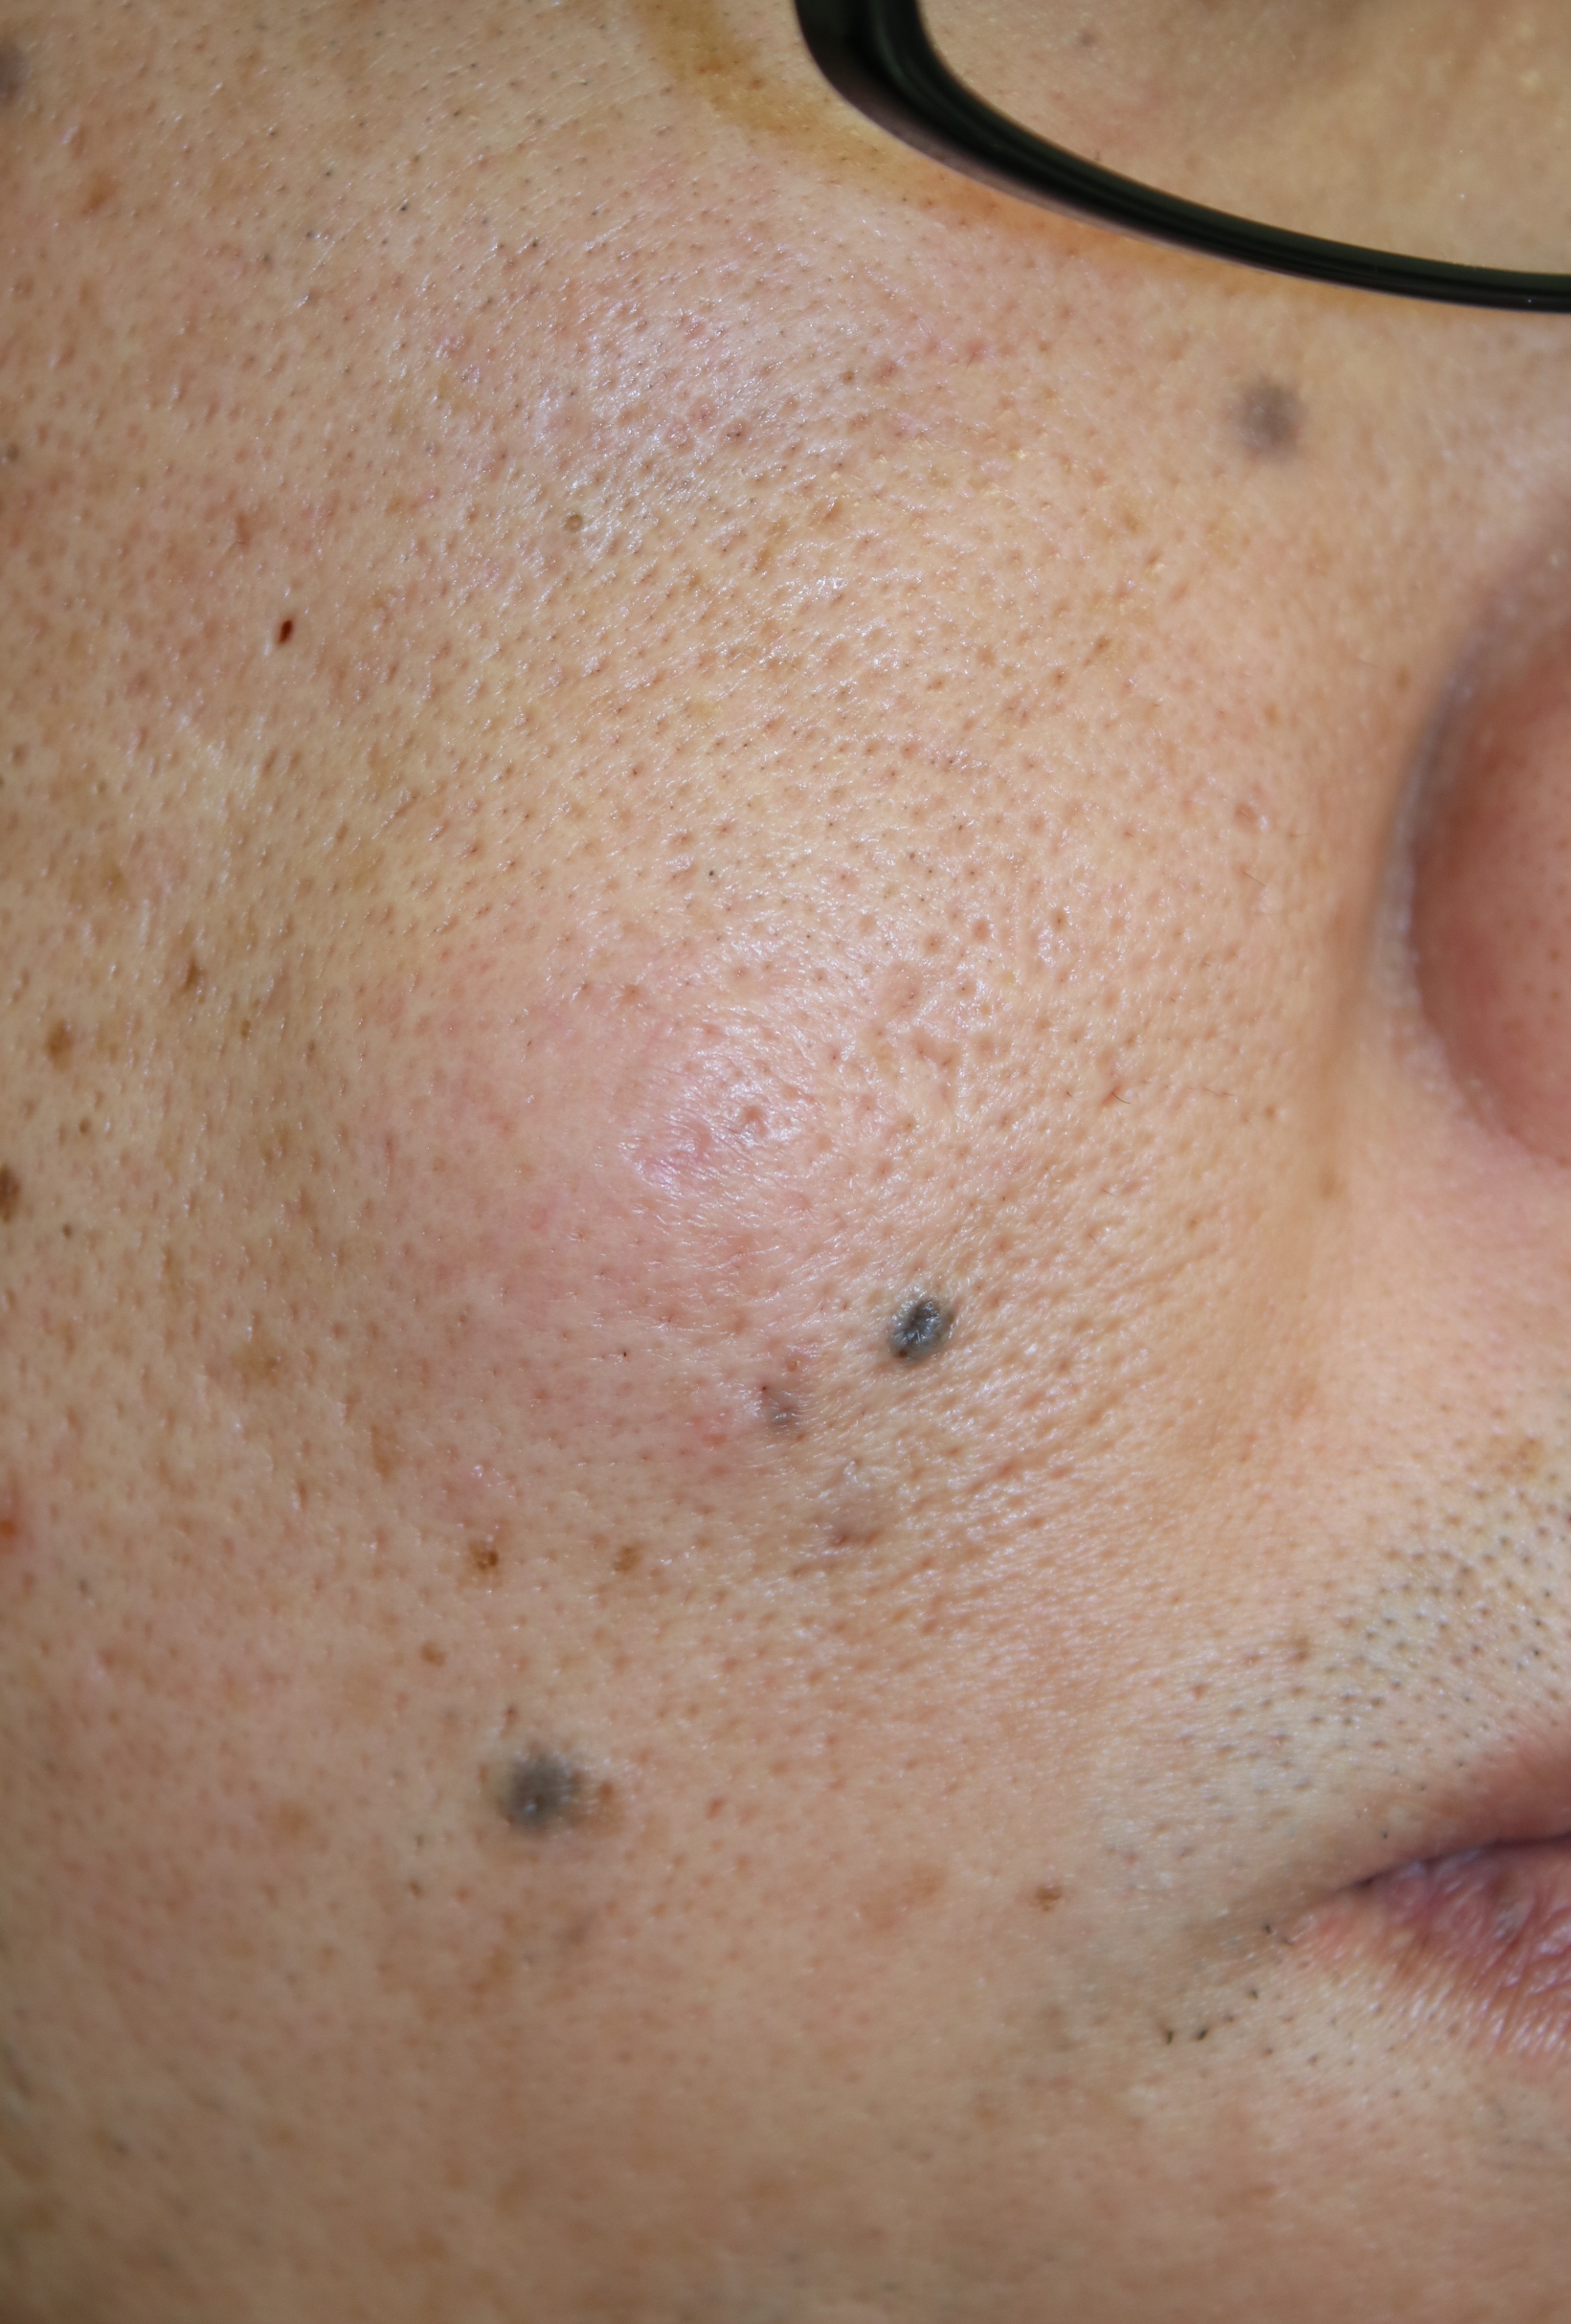 疥瘡堪稱「最癢皮膚病」傳染力強 5招預防 | 症狀 | 藥物 | 疥蟲 | 大紀元